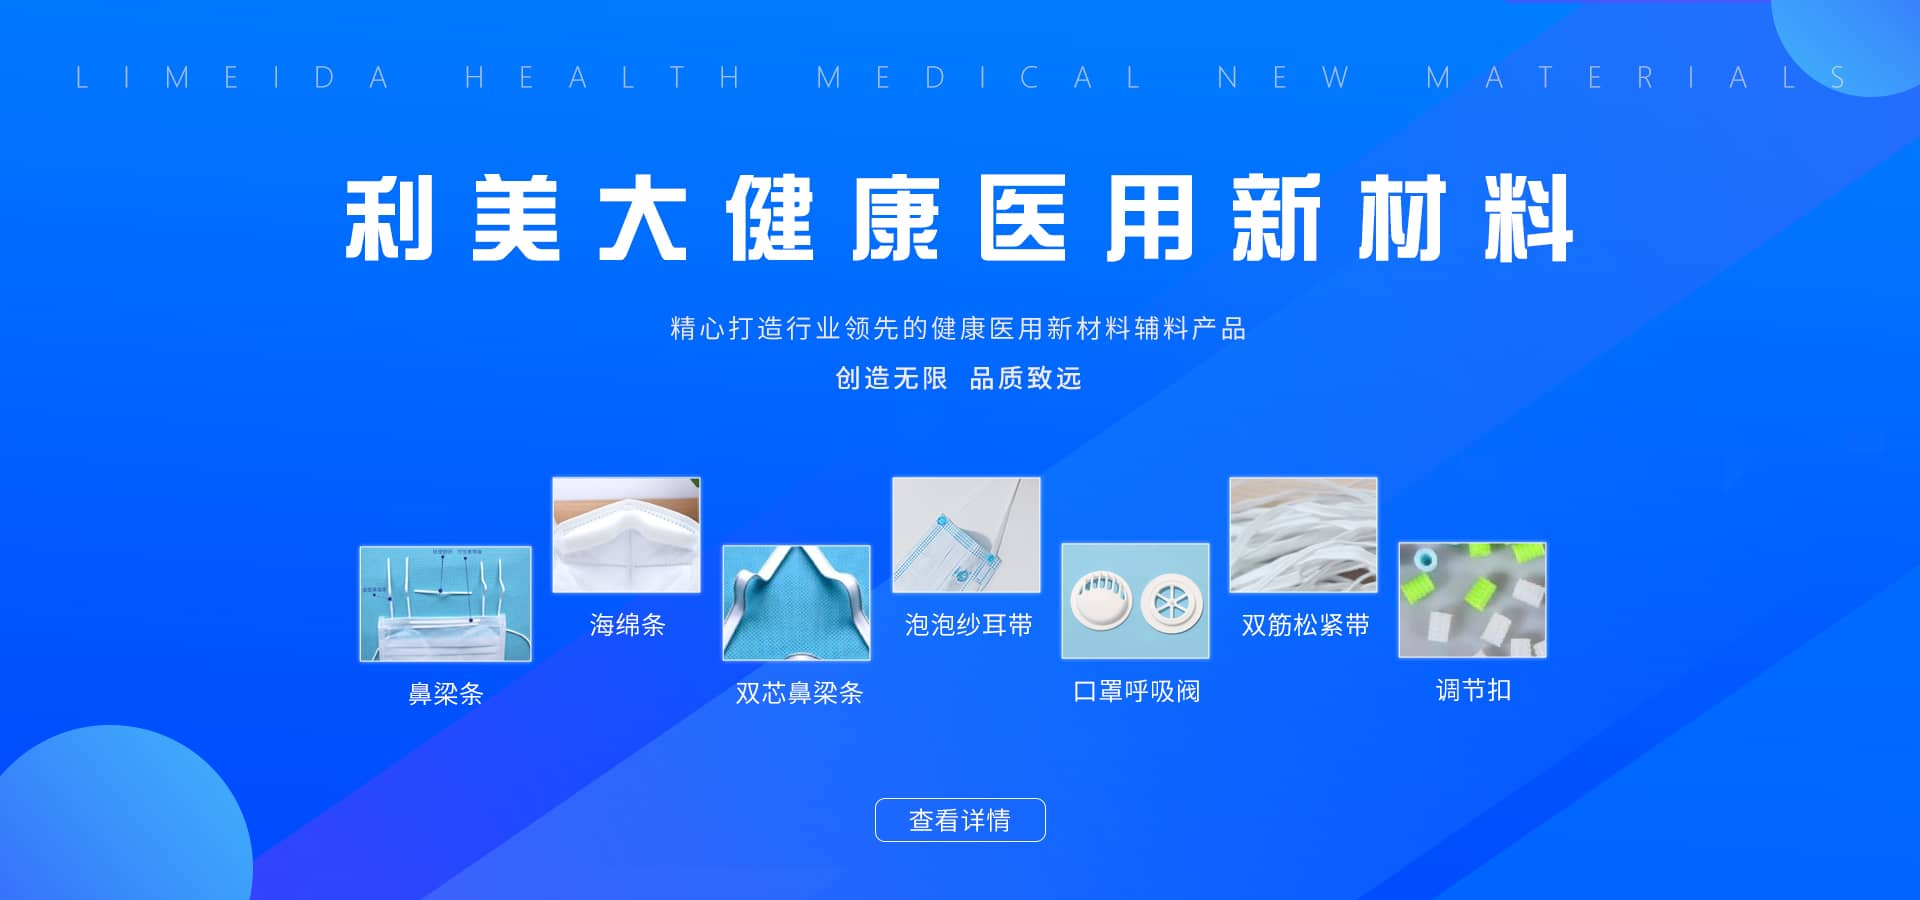 太阳集团游戏2138网站大健康医用新材料研发基地